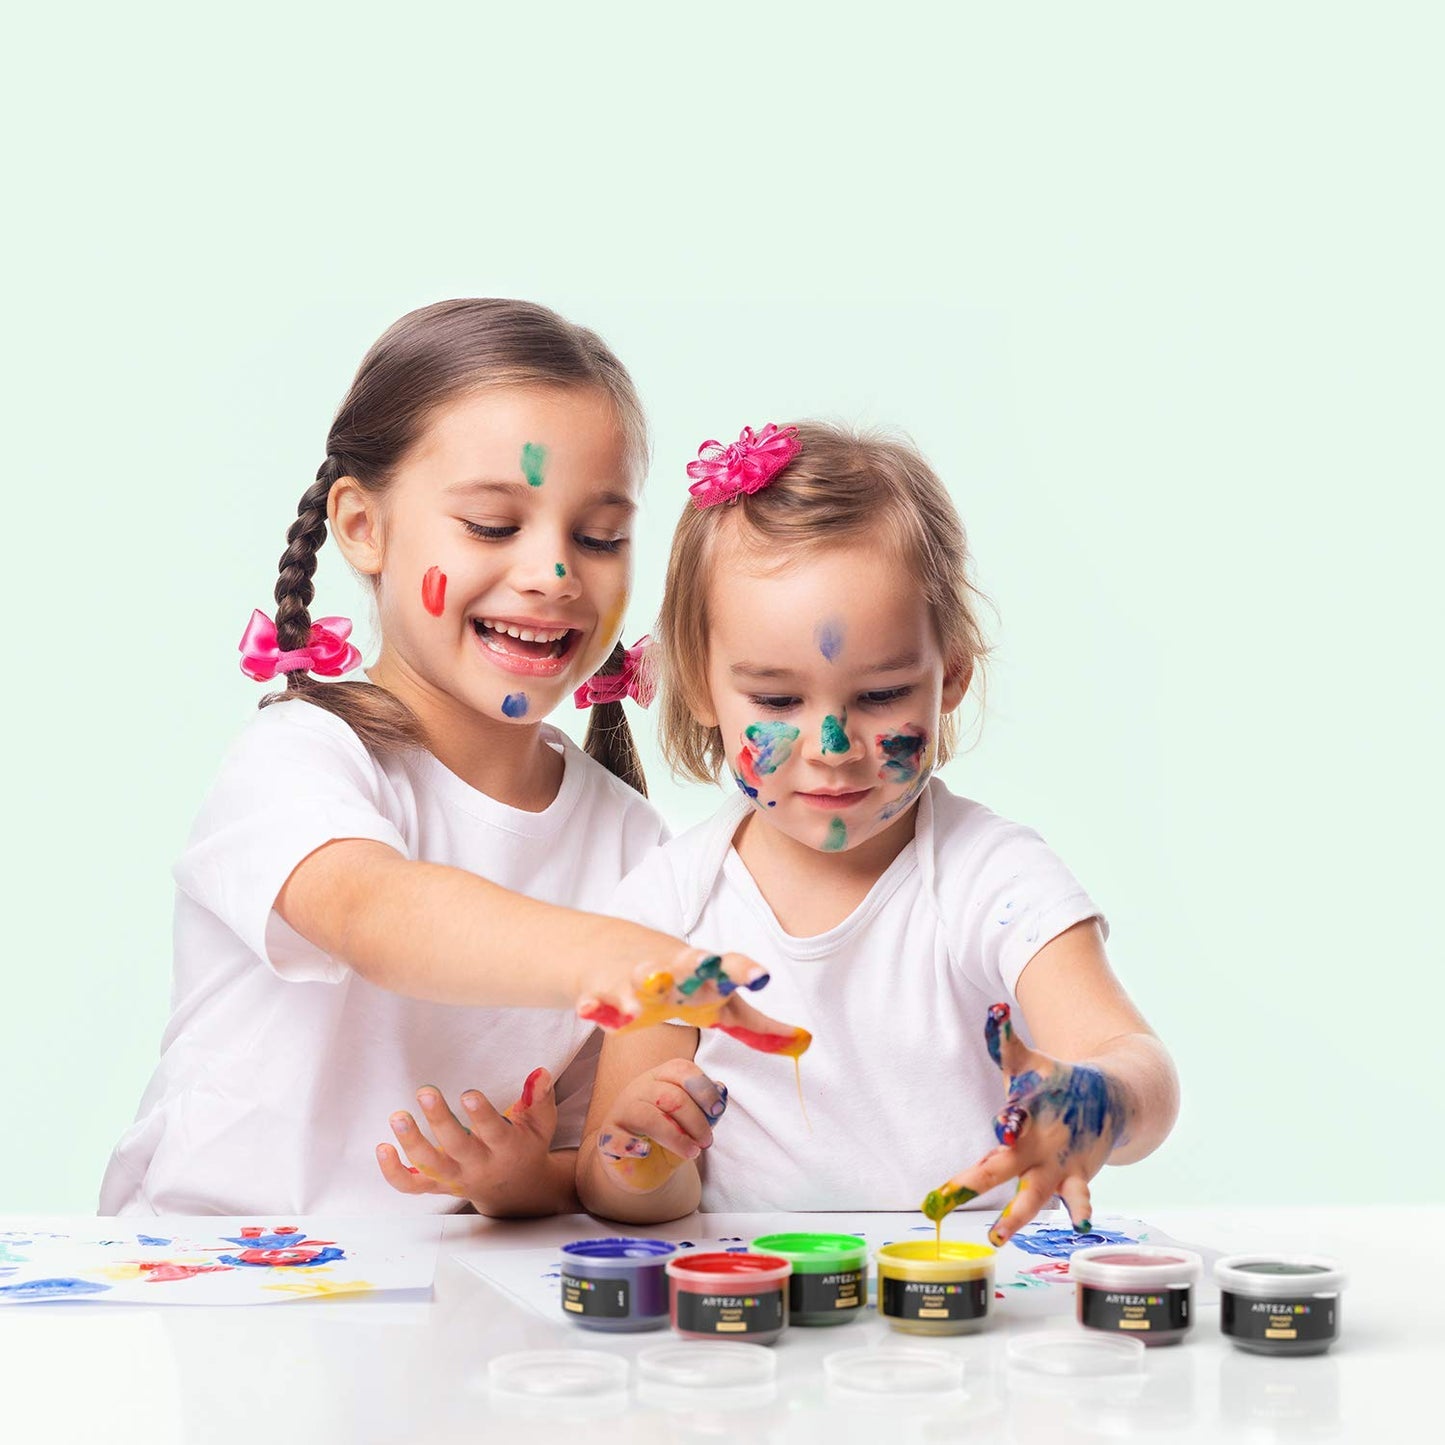 Arteza Kids Finger Paints, Assorted Colors, 30ml - Set of 30